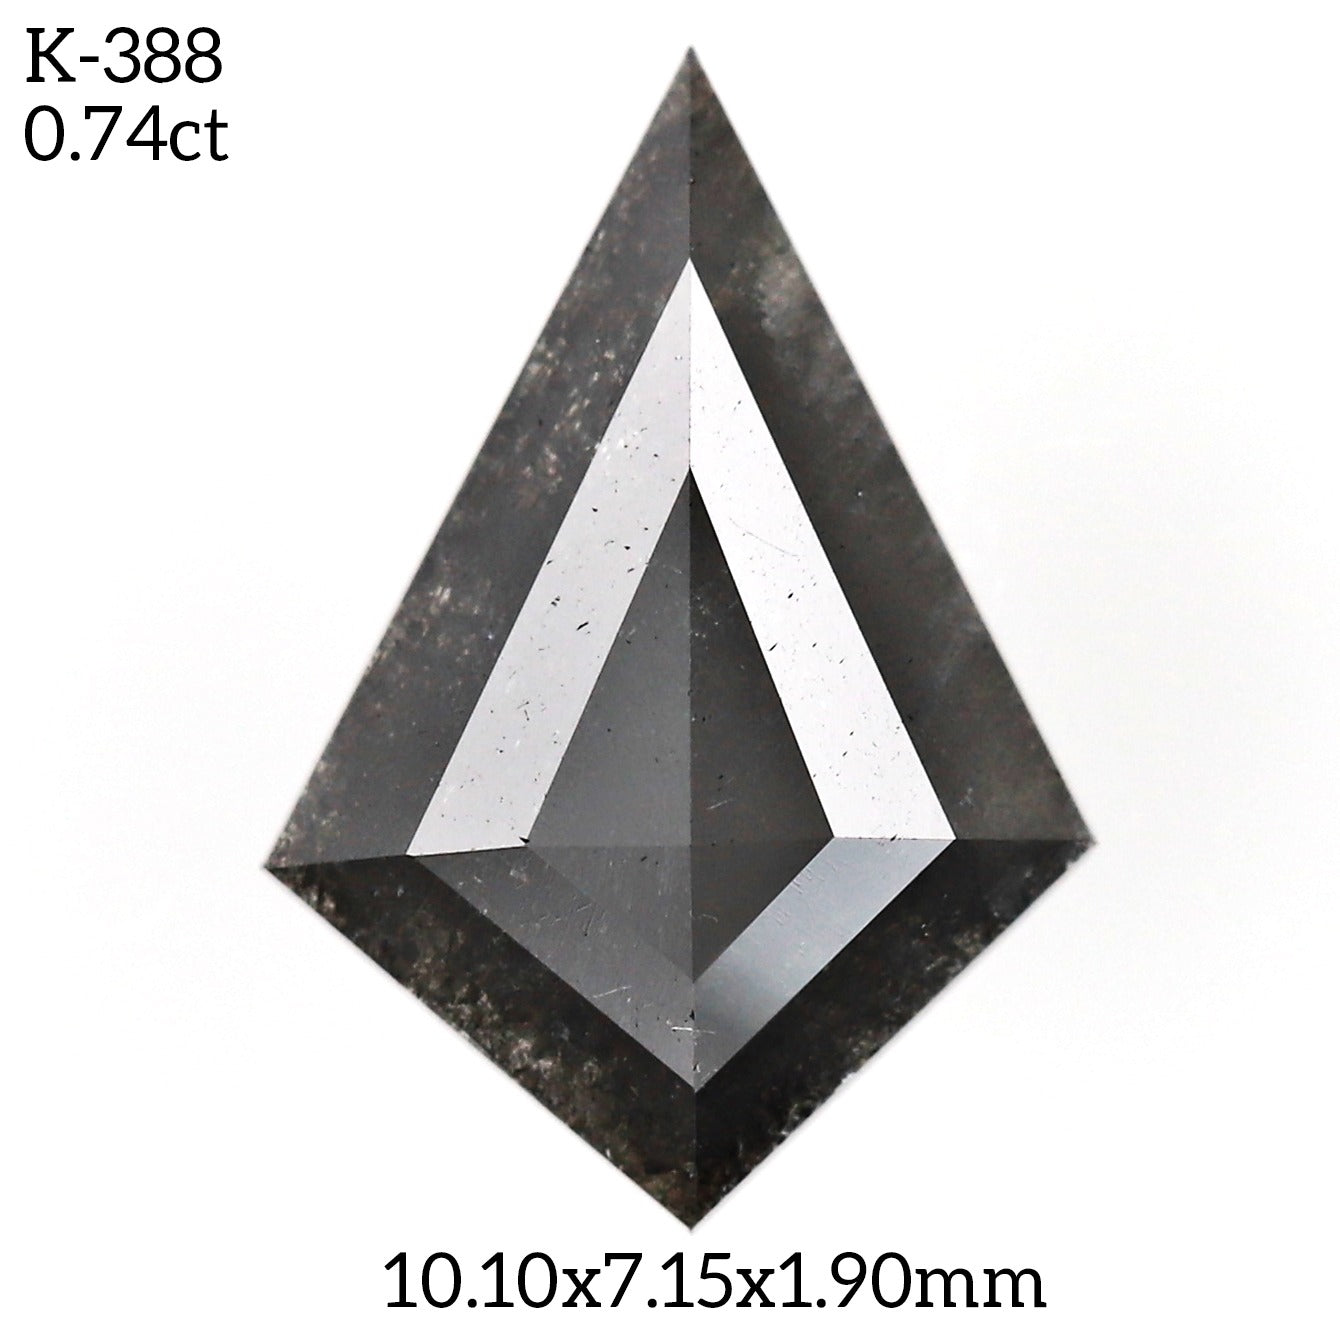 K388 - Salt and pepper kite diamond